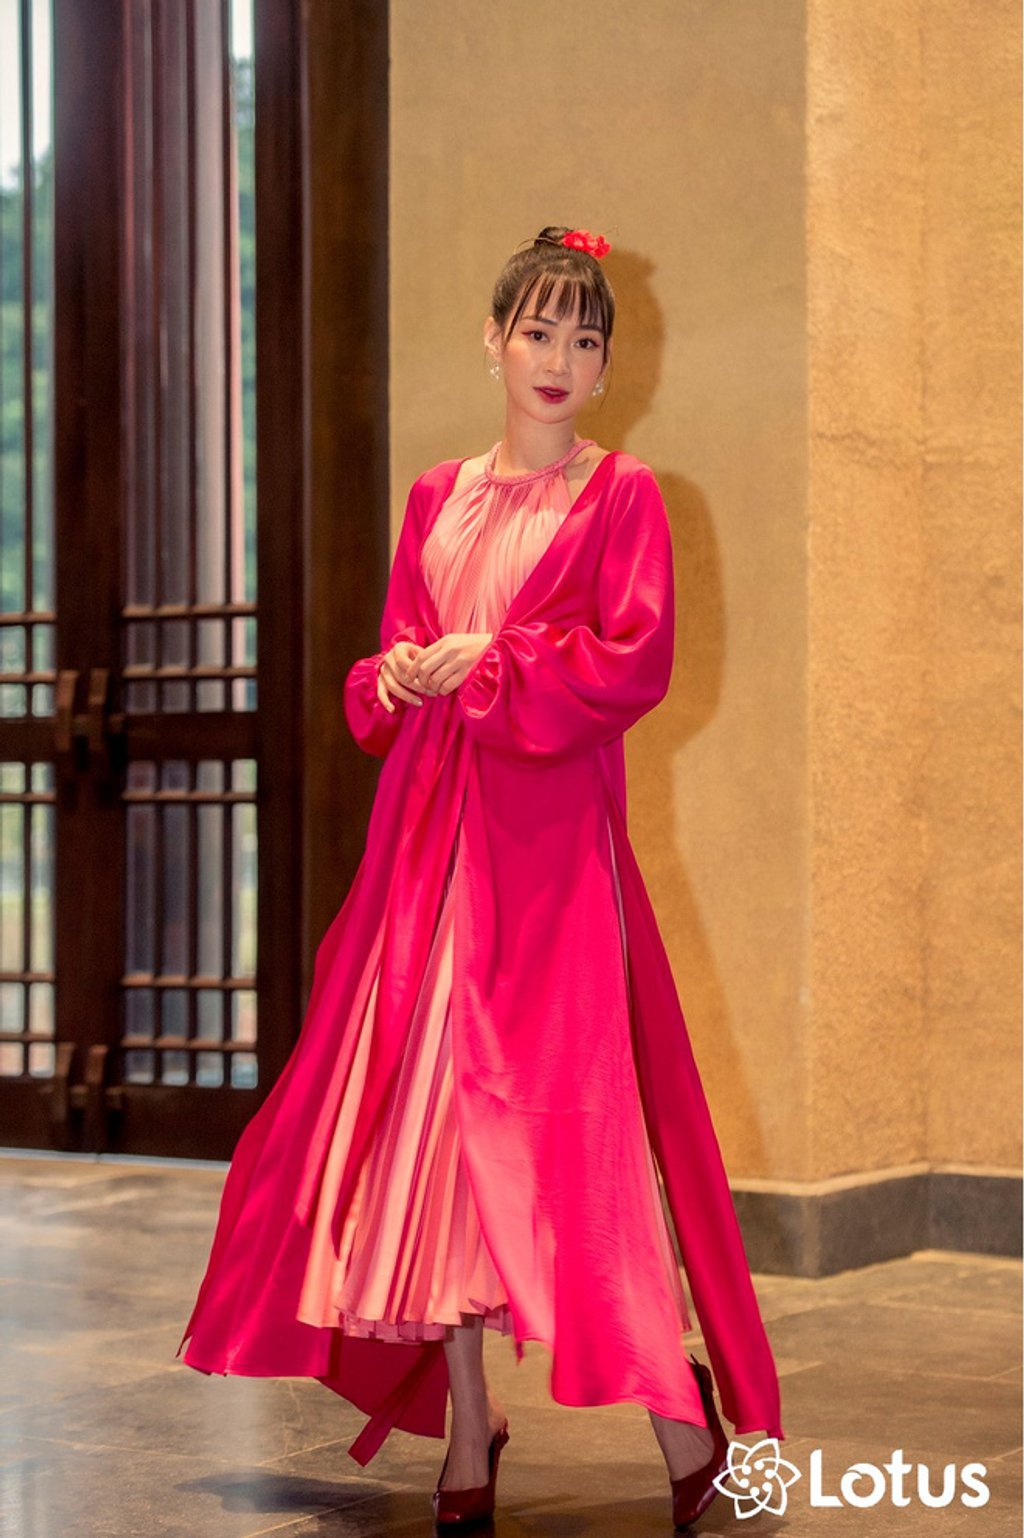 Sun Ht hóa thân thành cô thôn nữ xinh đẹp ngọt ngào trong bộ váy tứ thân màu hồng pha đỏ